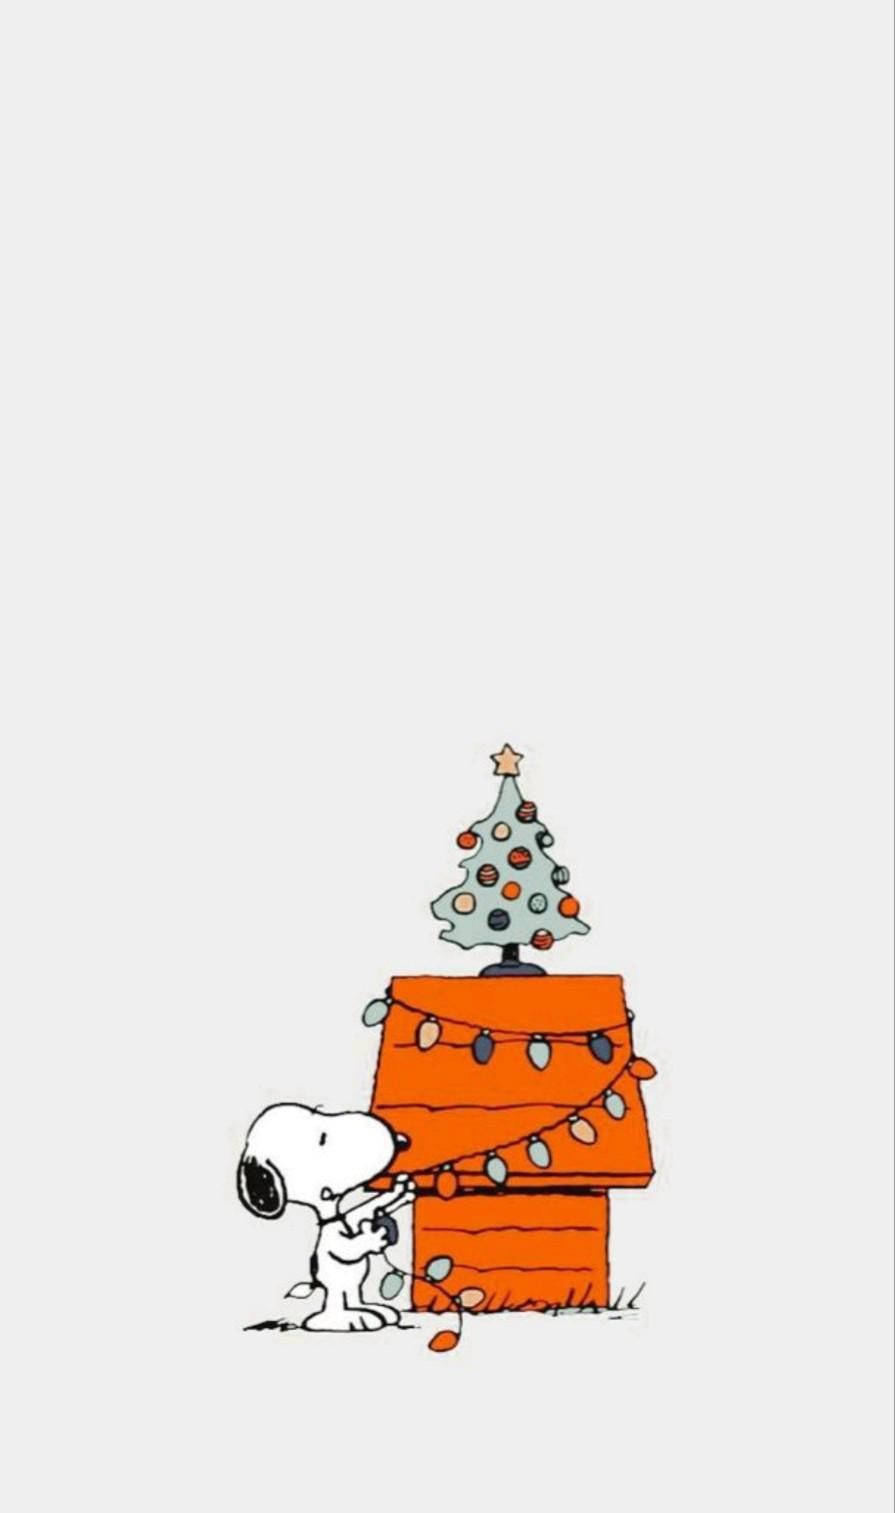 Feiernsie Die Feiertage Mit Snoopy Und Ihrem Iphone! Wallpaper